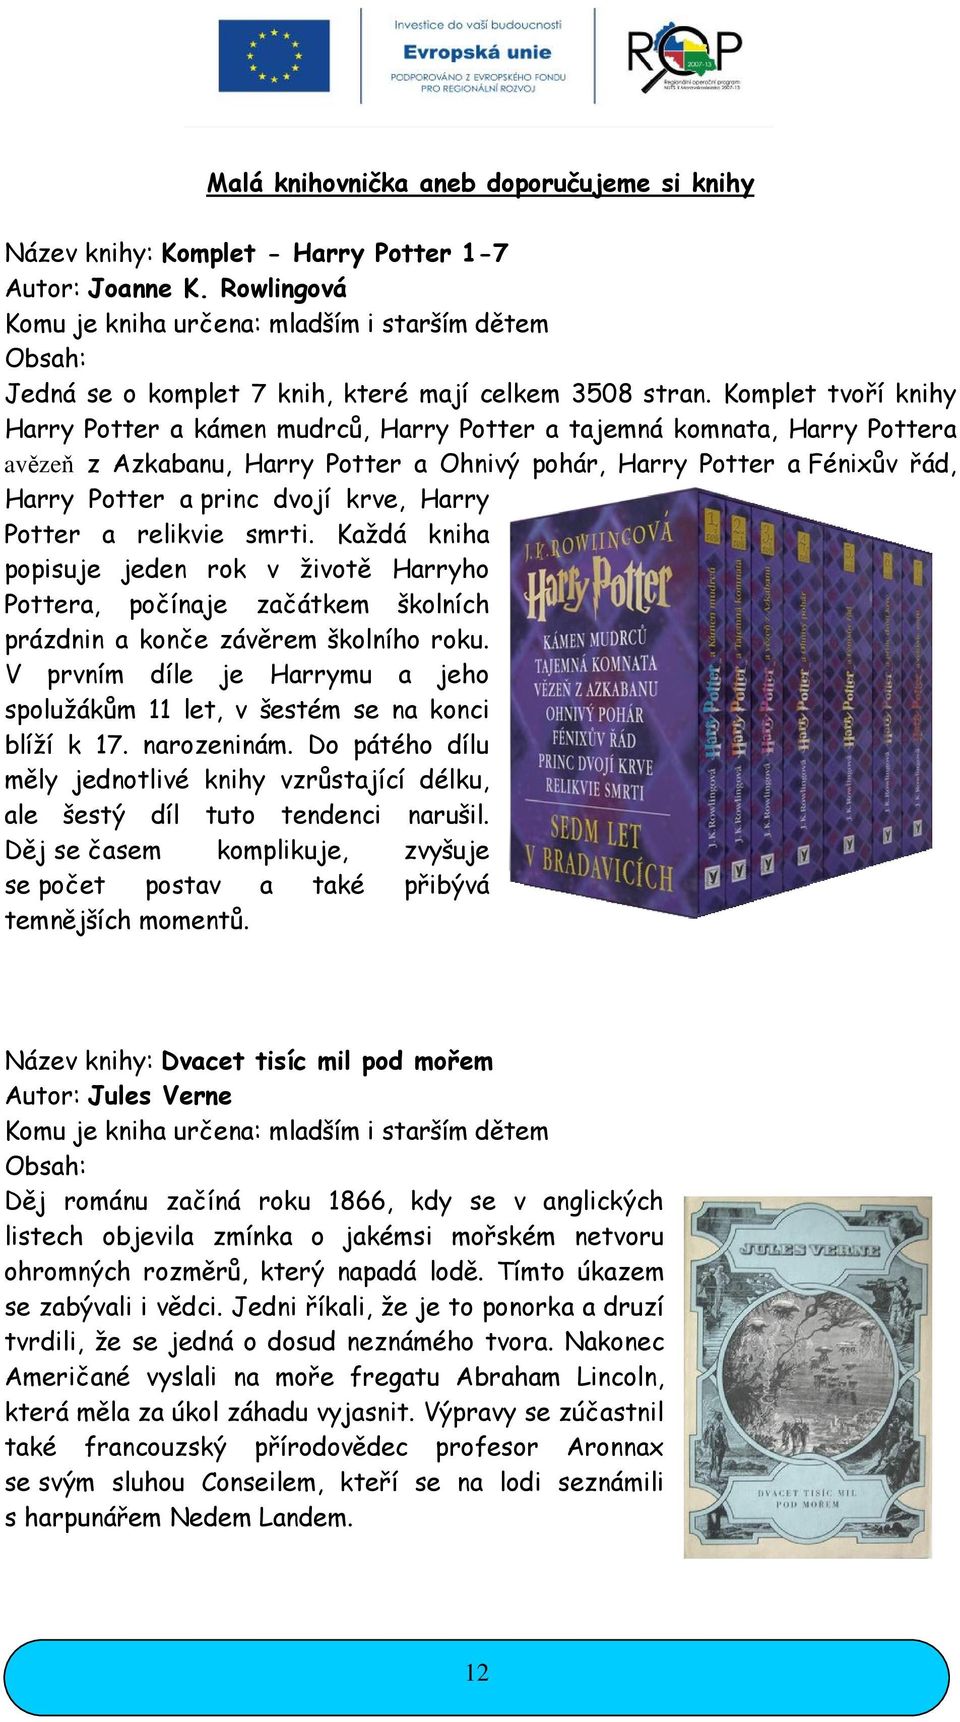 Komplet tvoří knihy Harry Potter a kámen mudrců, Harry Potter a tajemná komnata, Harry Pottera avězeň z Azkabanu, Harry Potter a Ohnivý pohár, Harry Potter a Fénixův řád, Harry Potter a princ dvojí